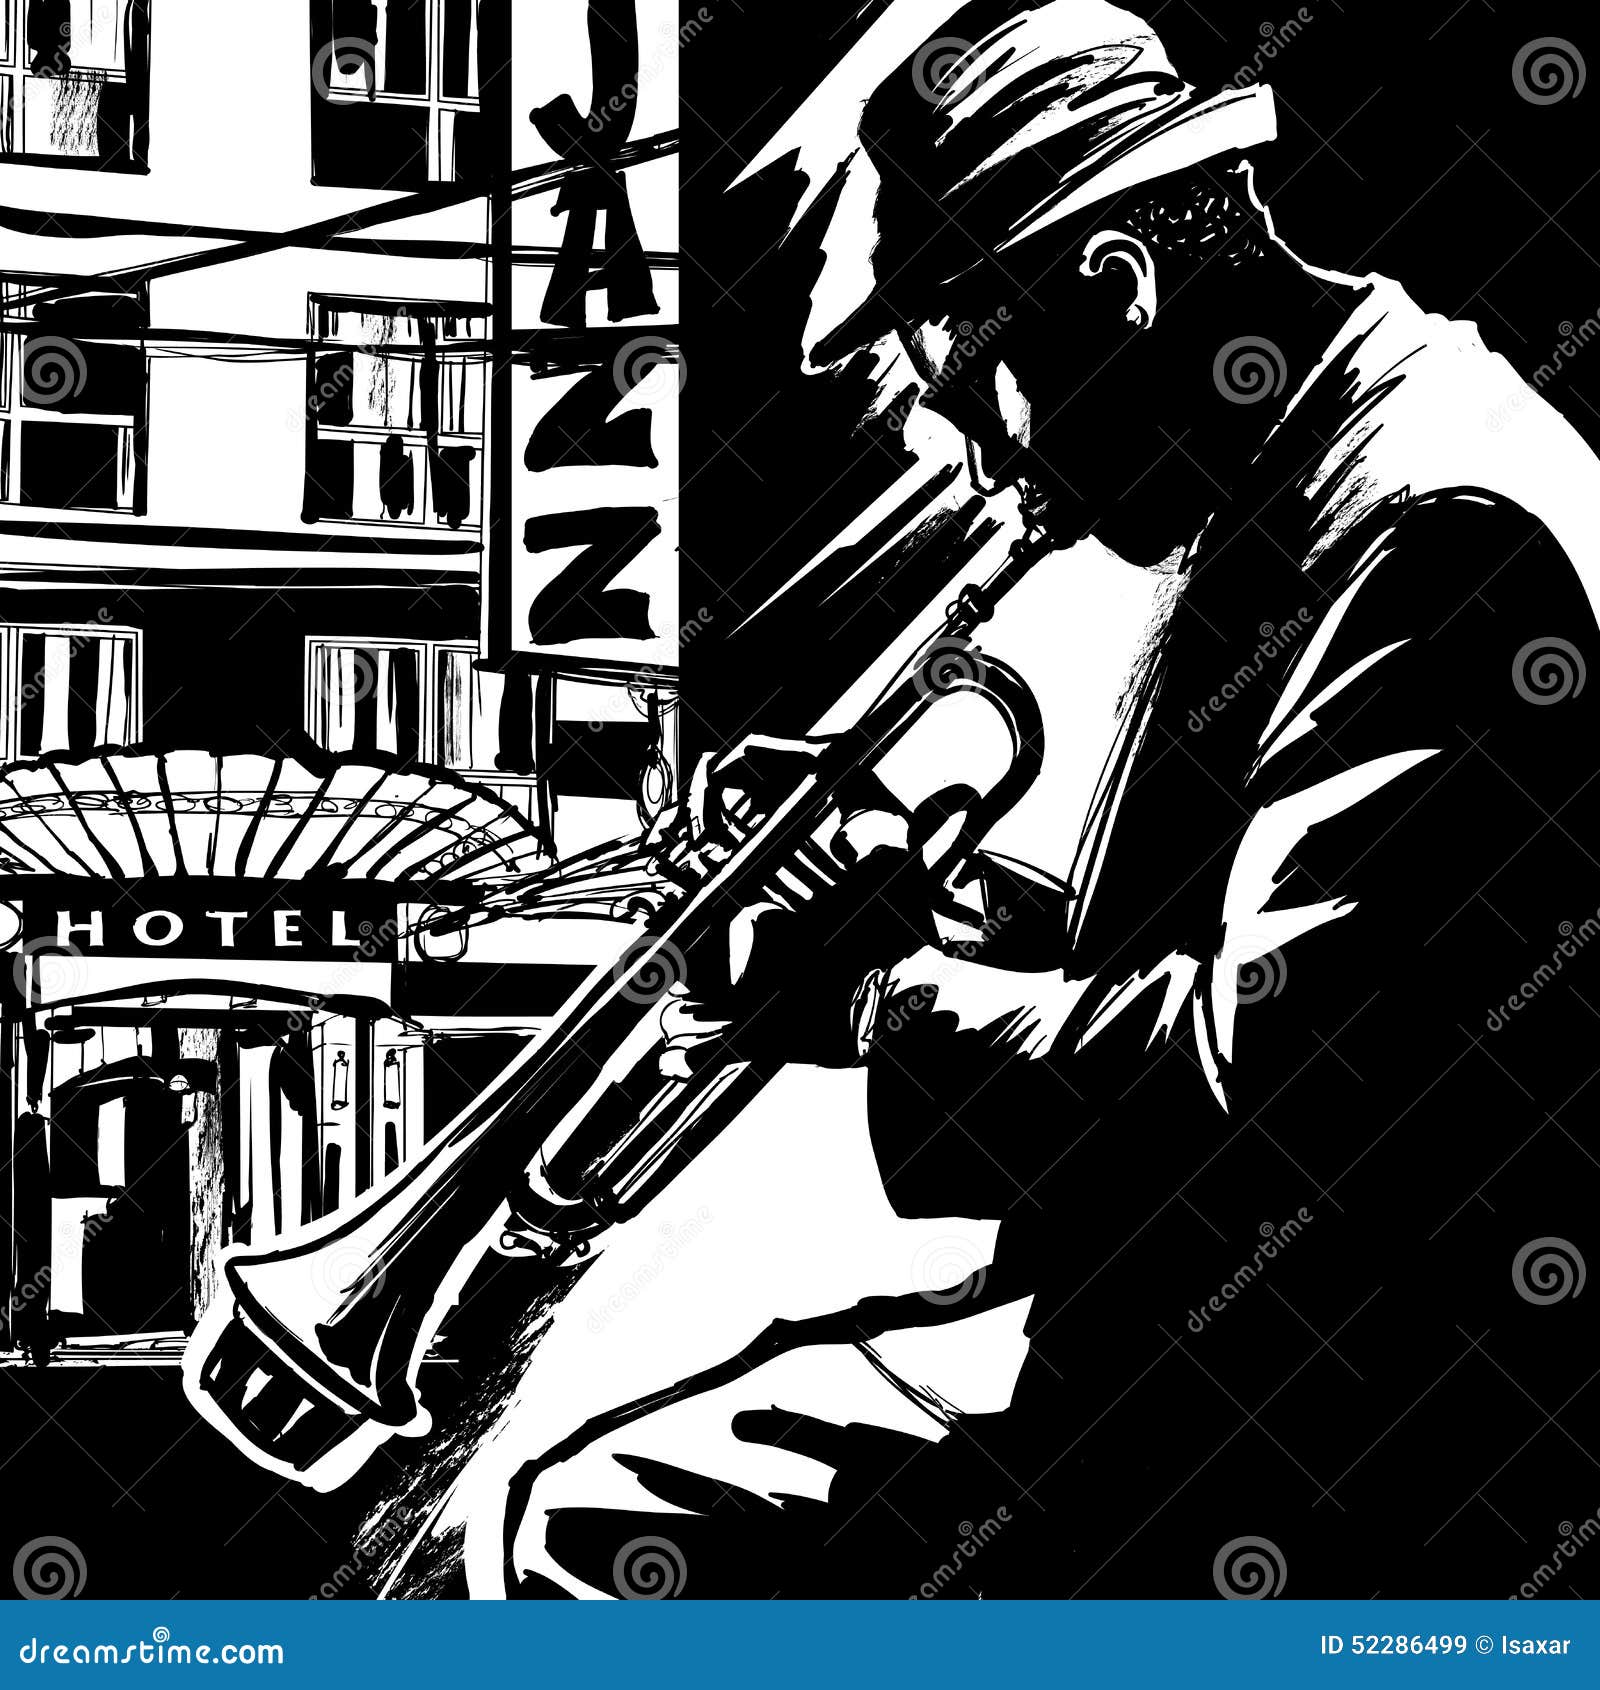 jazz trumpet player